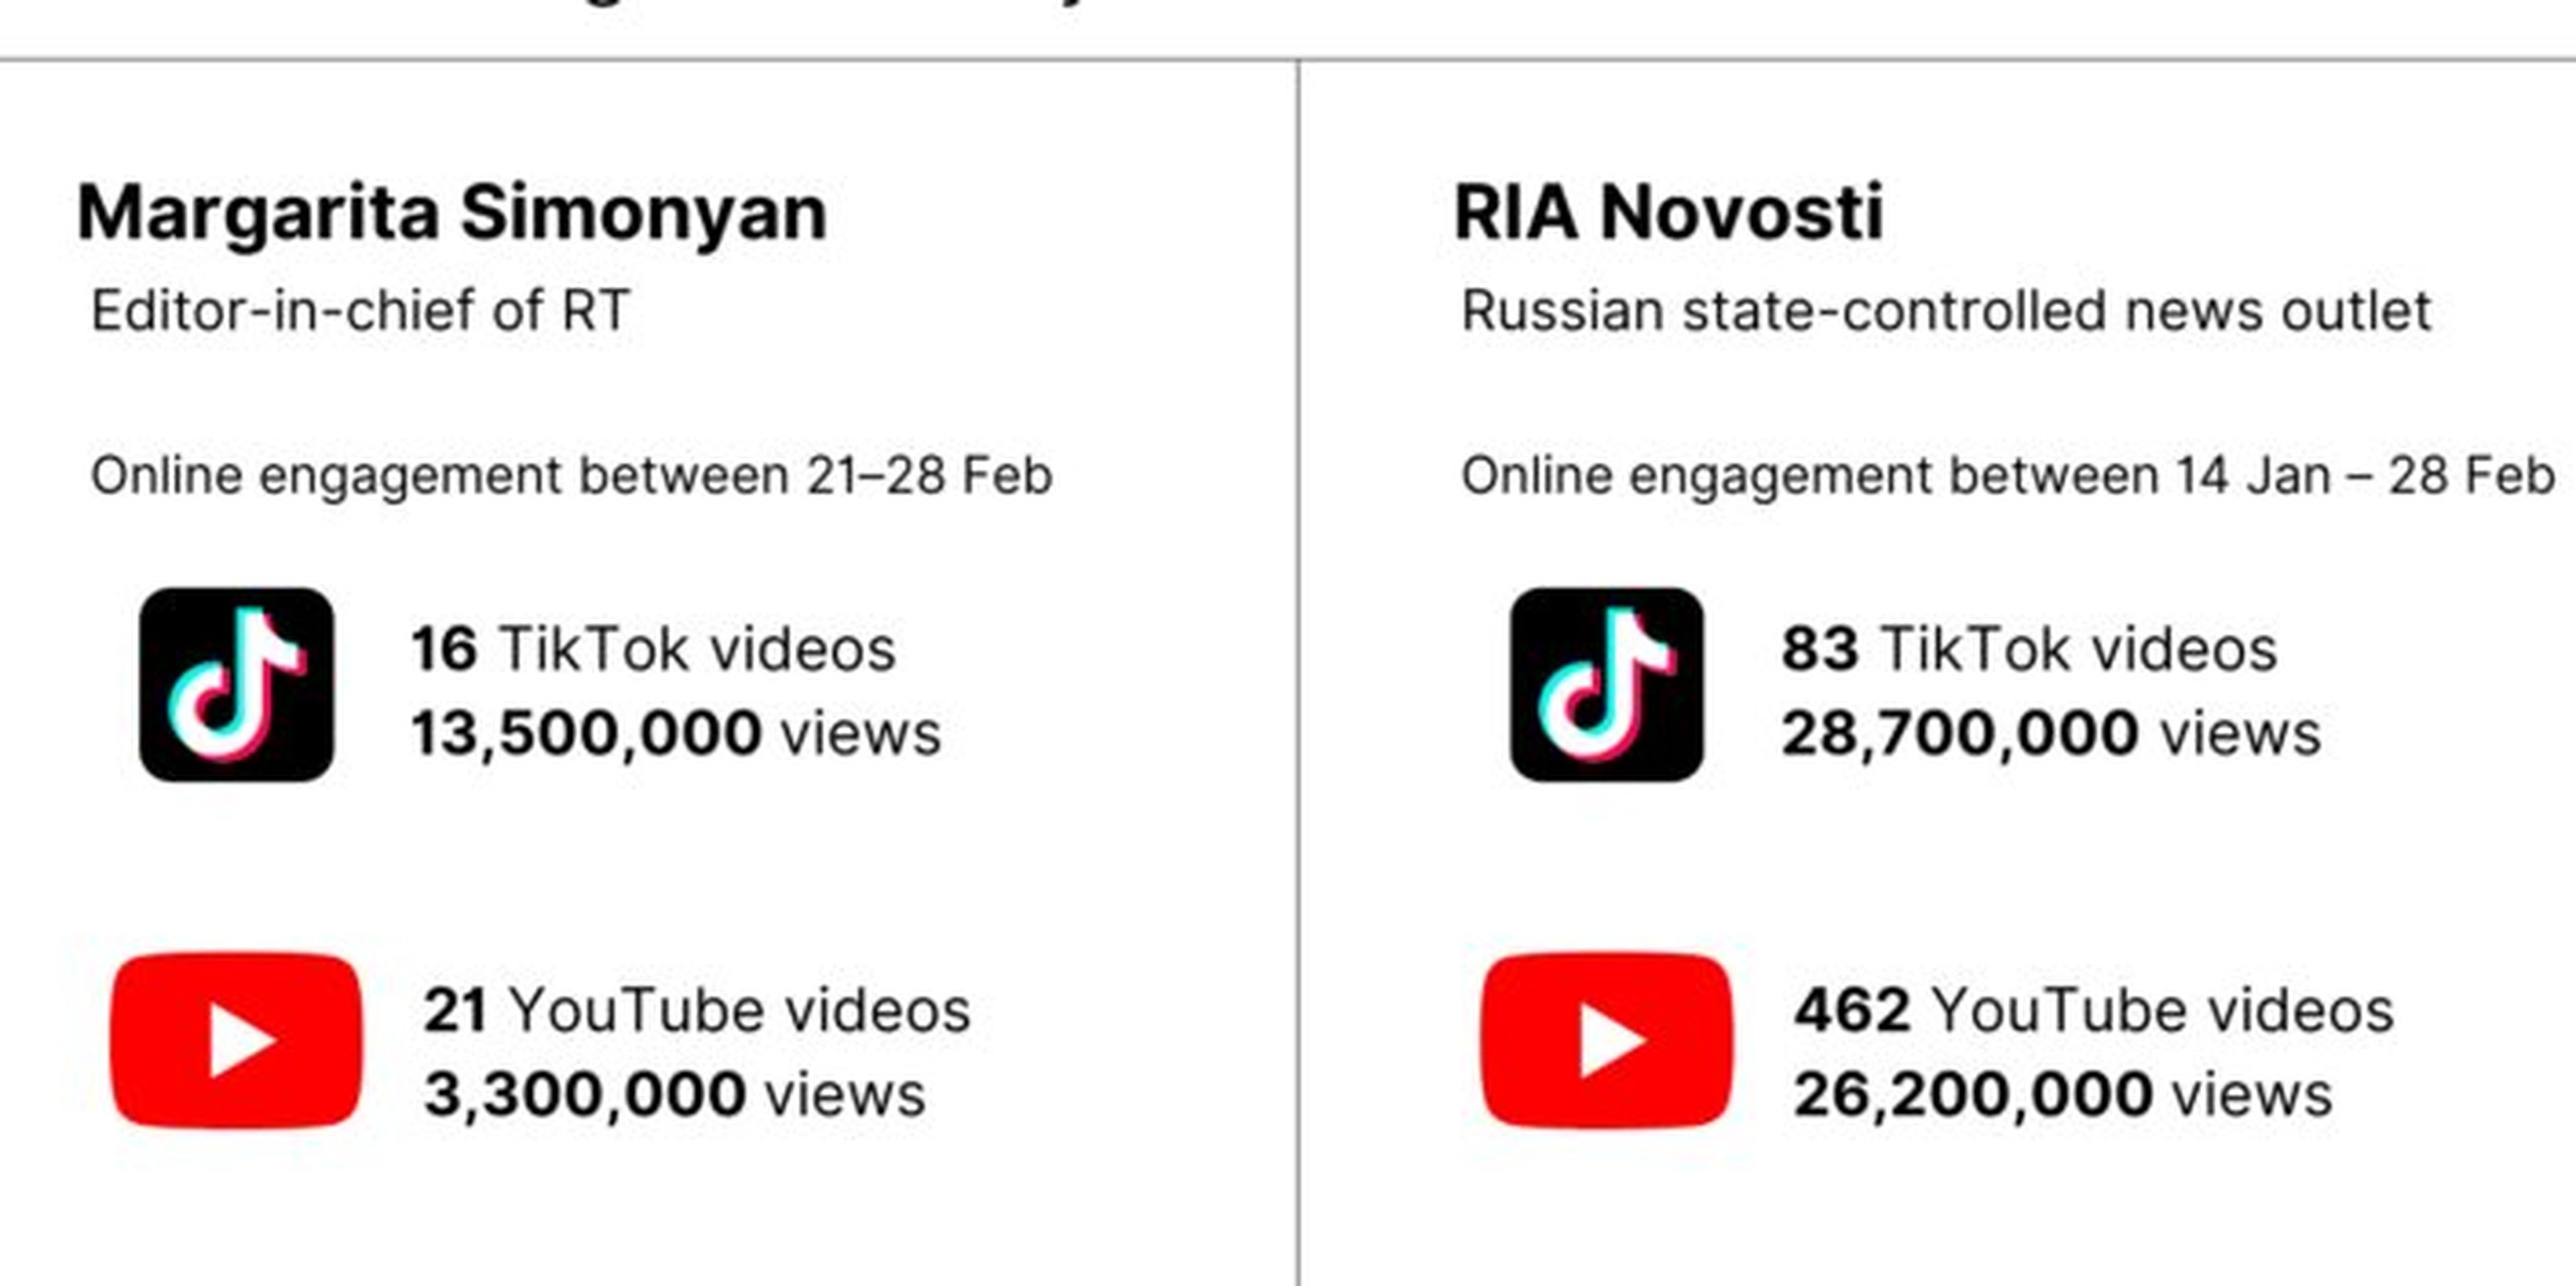 Las cuentas de TikTok vinculadas al Kremlin tuvieron más participación que las de YouTube, incluso cuando publicaron menos vídeos en general.